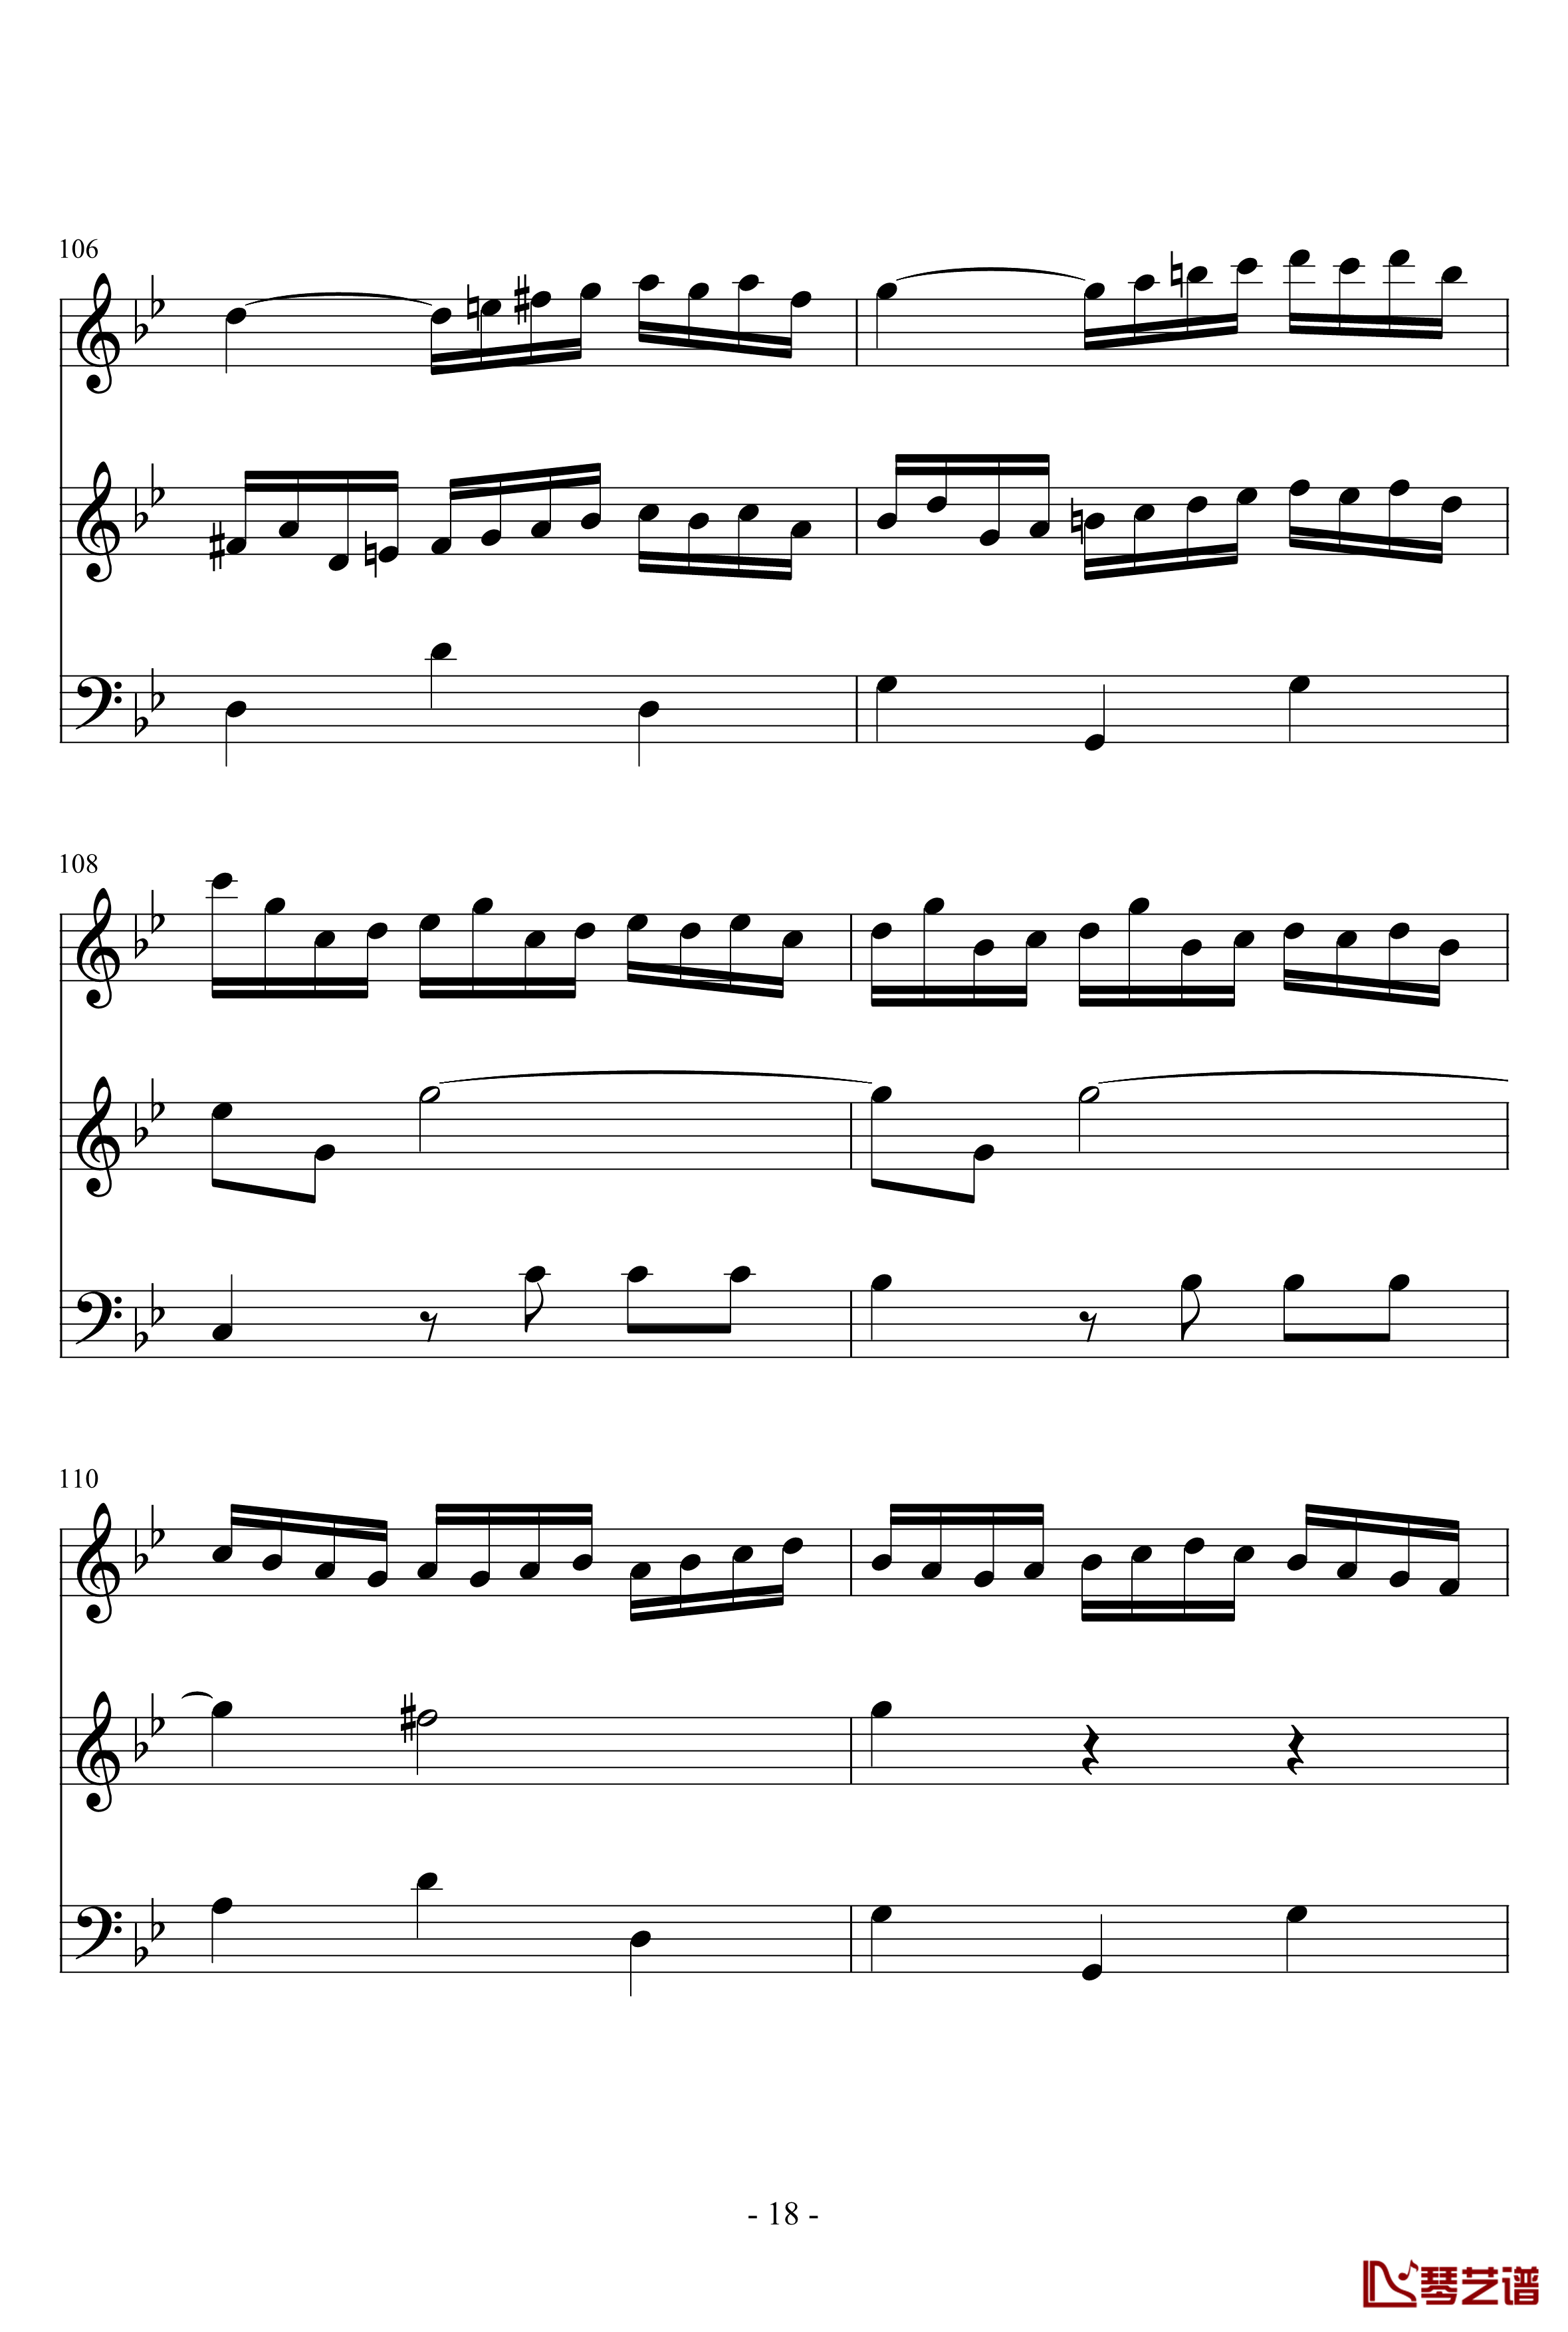 长笛与羽管键琴奏鸣曲第一乐章钢琴谱-巴赫-P.E.Bach18